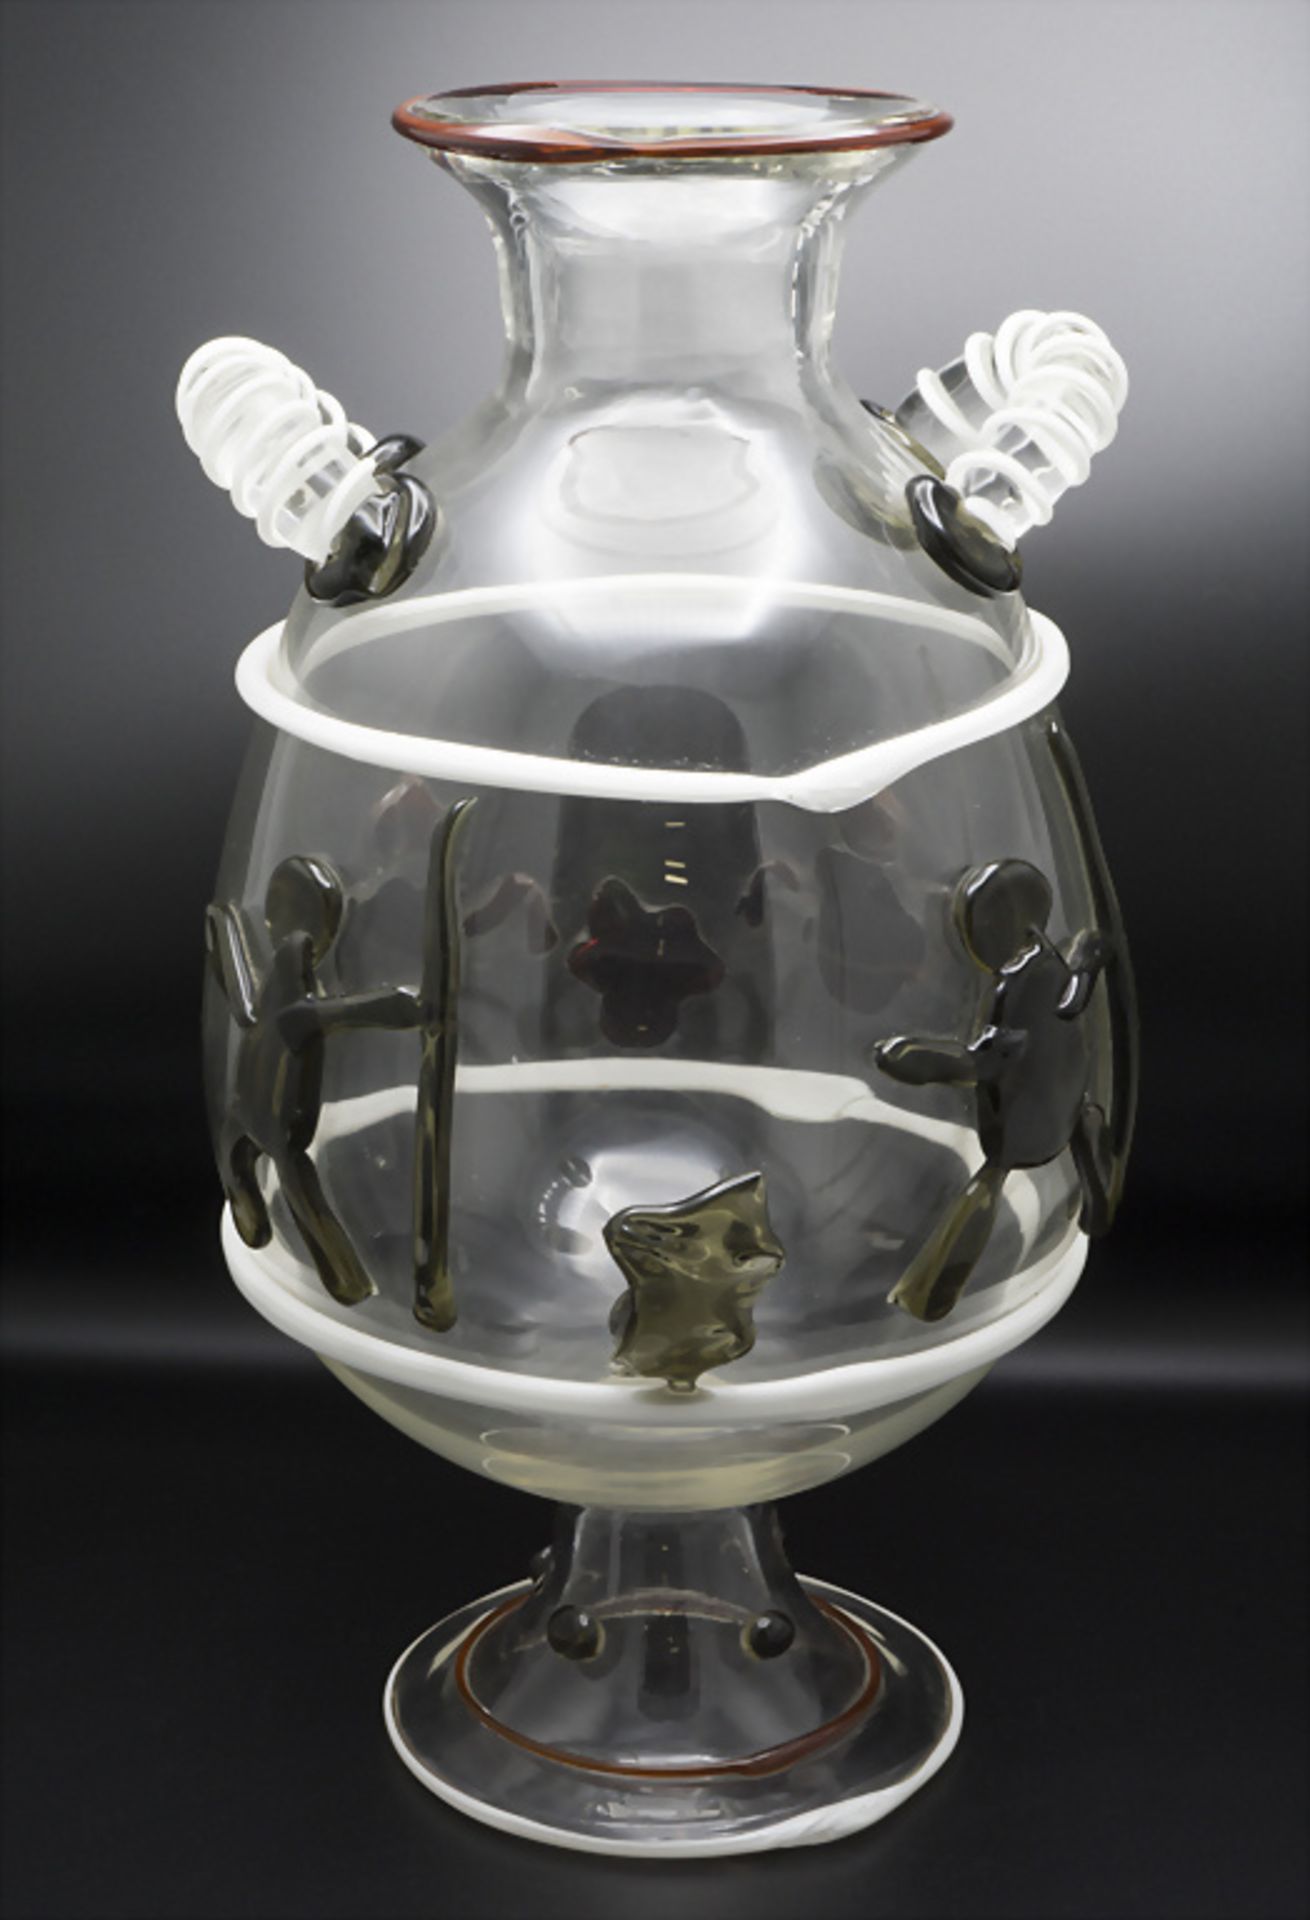 Große Glasziervase 'Stierkampf' / A large decorative glass vase 'bullfight', Murano, wohl ... - Bild 3 aus 8